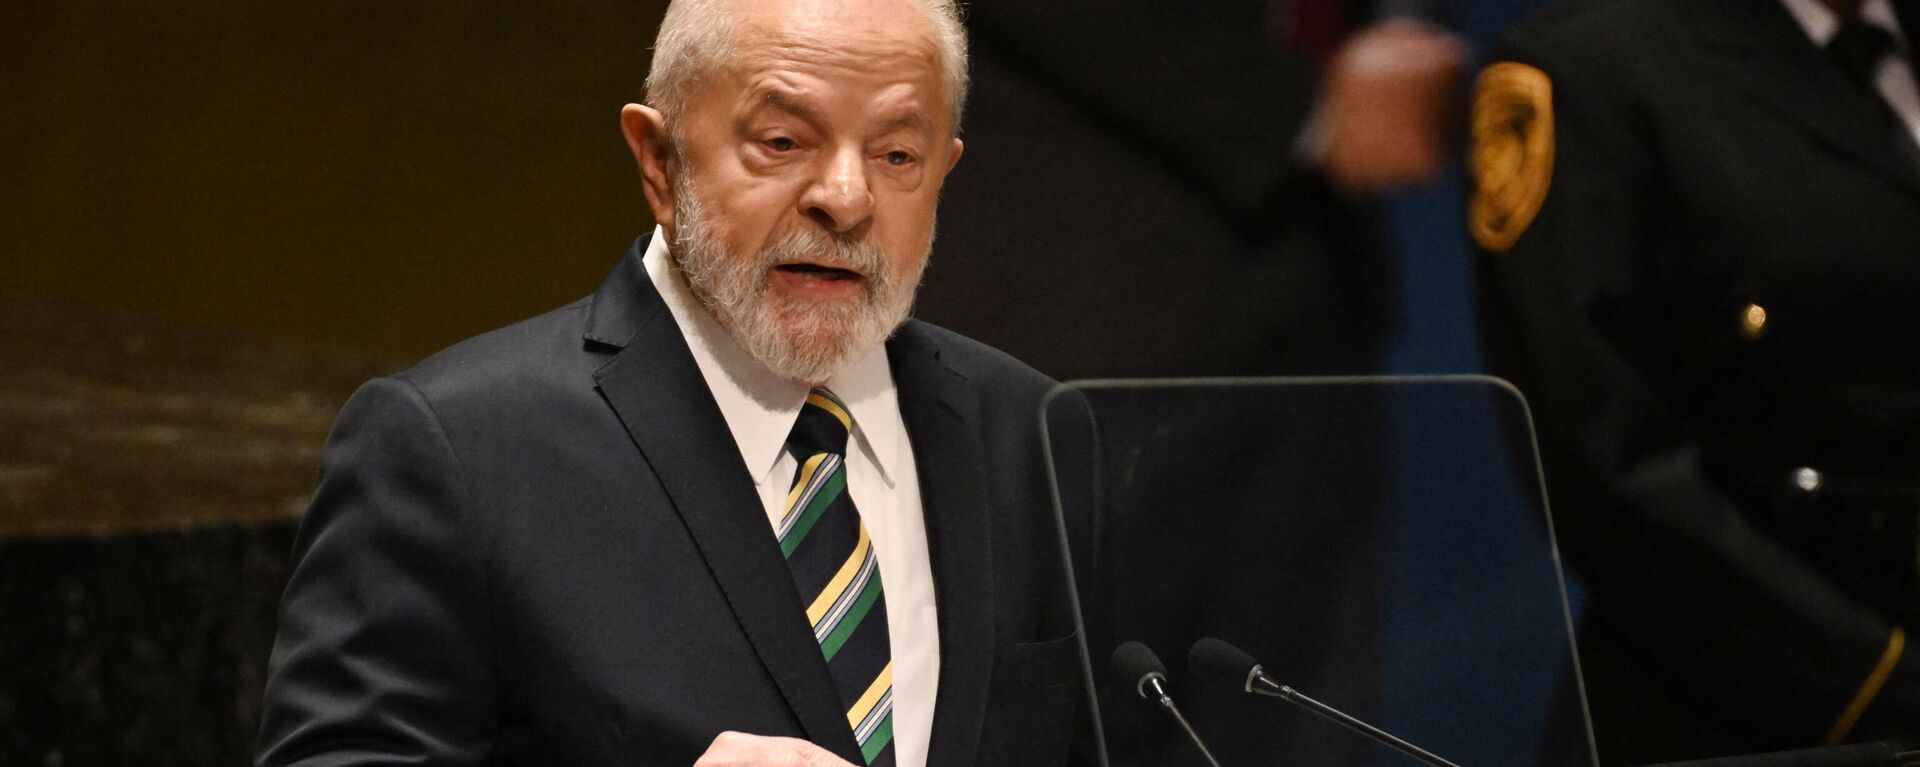 O presidente brasileiro, Luiz Inácio Lula da Silva, discursa na 78ª Assembleia Geral das Nações Unidas na sede da ONU na cidade de Nova York, em 19 de setembro de 2023. - Sputnik Brasil, 1920, 07.10.2023